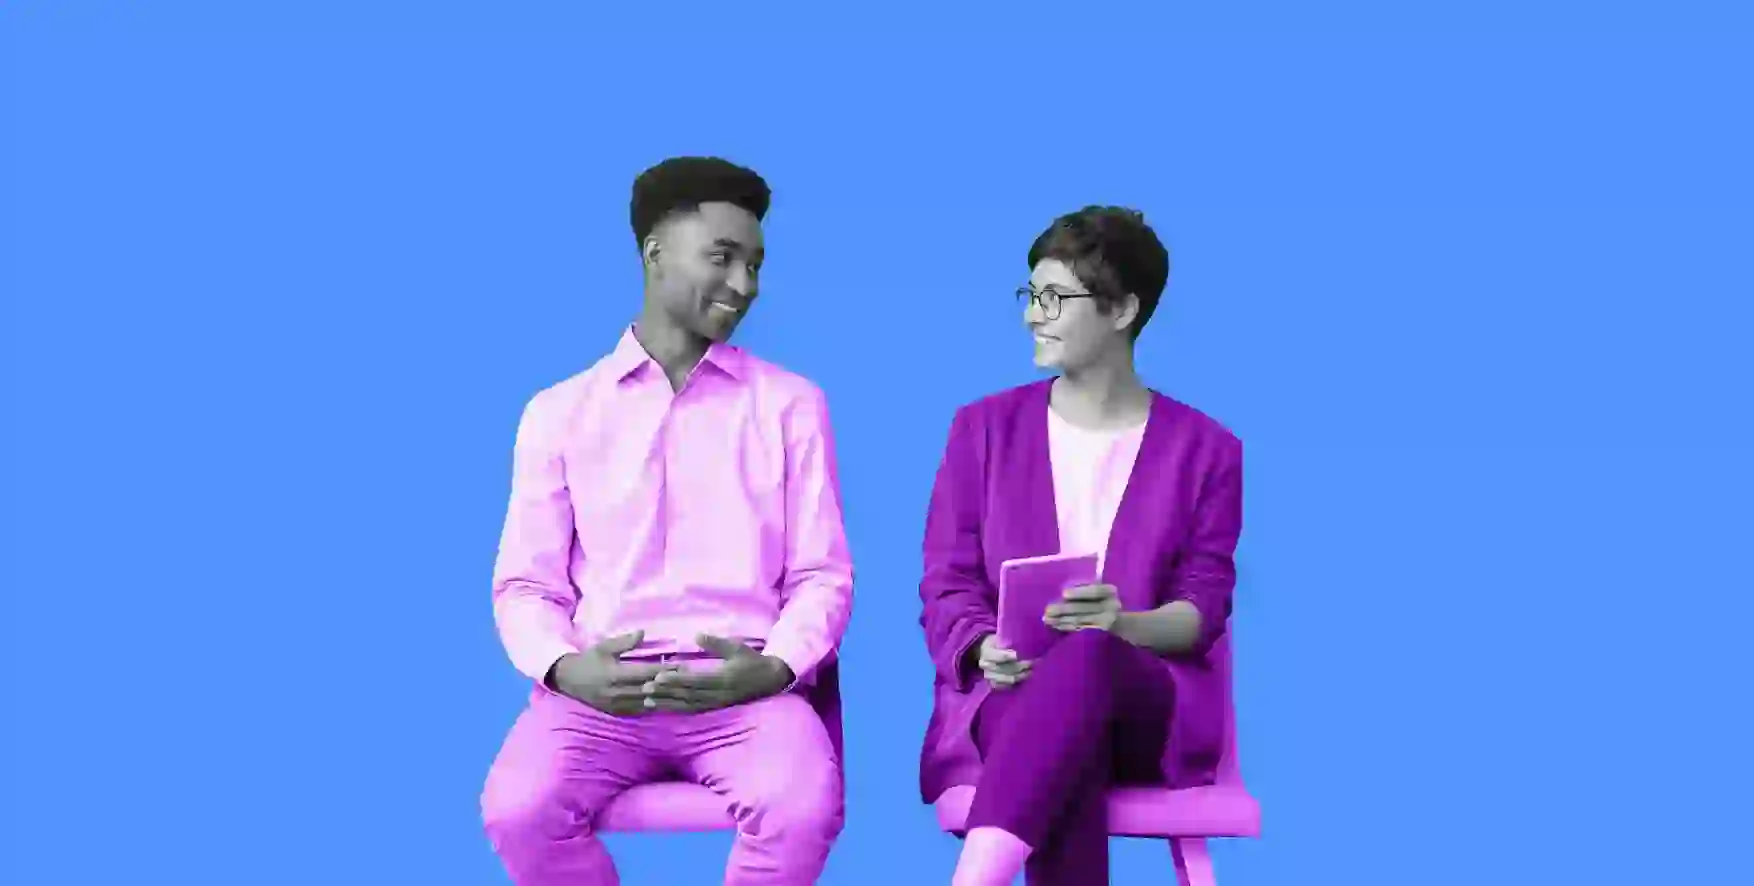 dos personas sentadas una al lado de la otra durante una entrevista